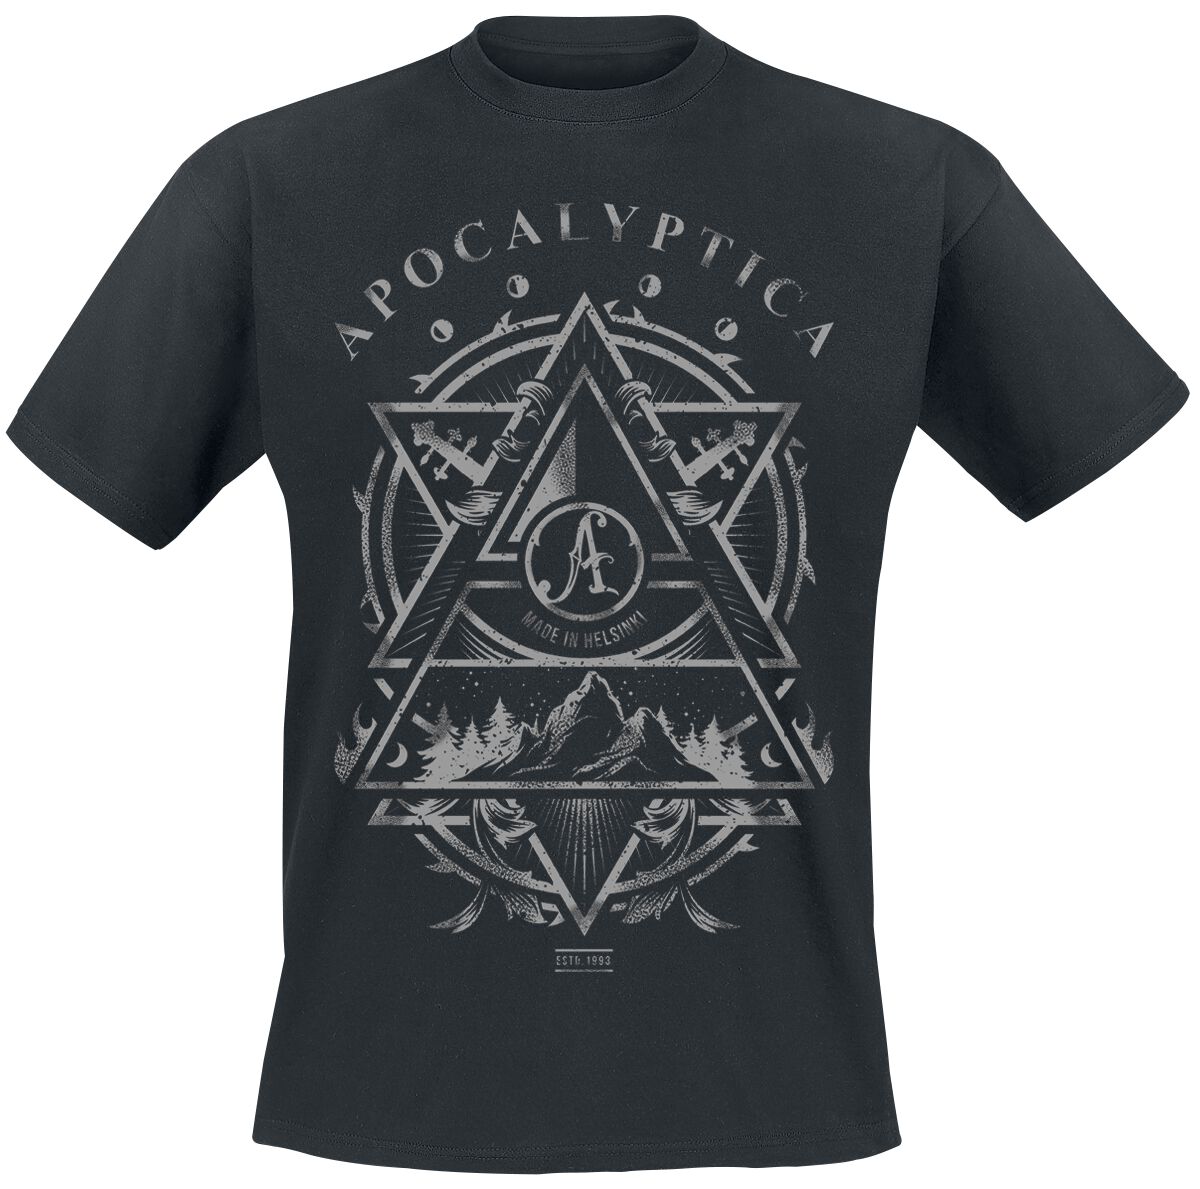 Apocalyptica T-Shirt - Made In Helsinki - S bis XXL - für Männer - Größe XXL - schwarz  - Lizenziertes Merchandise!